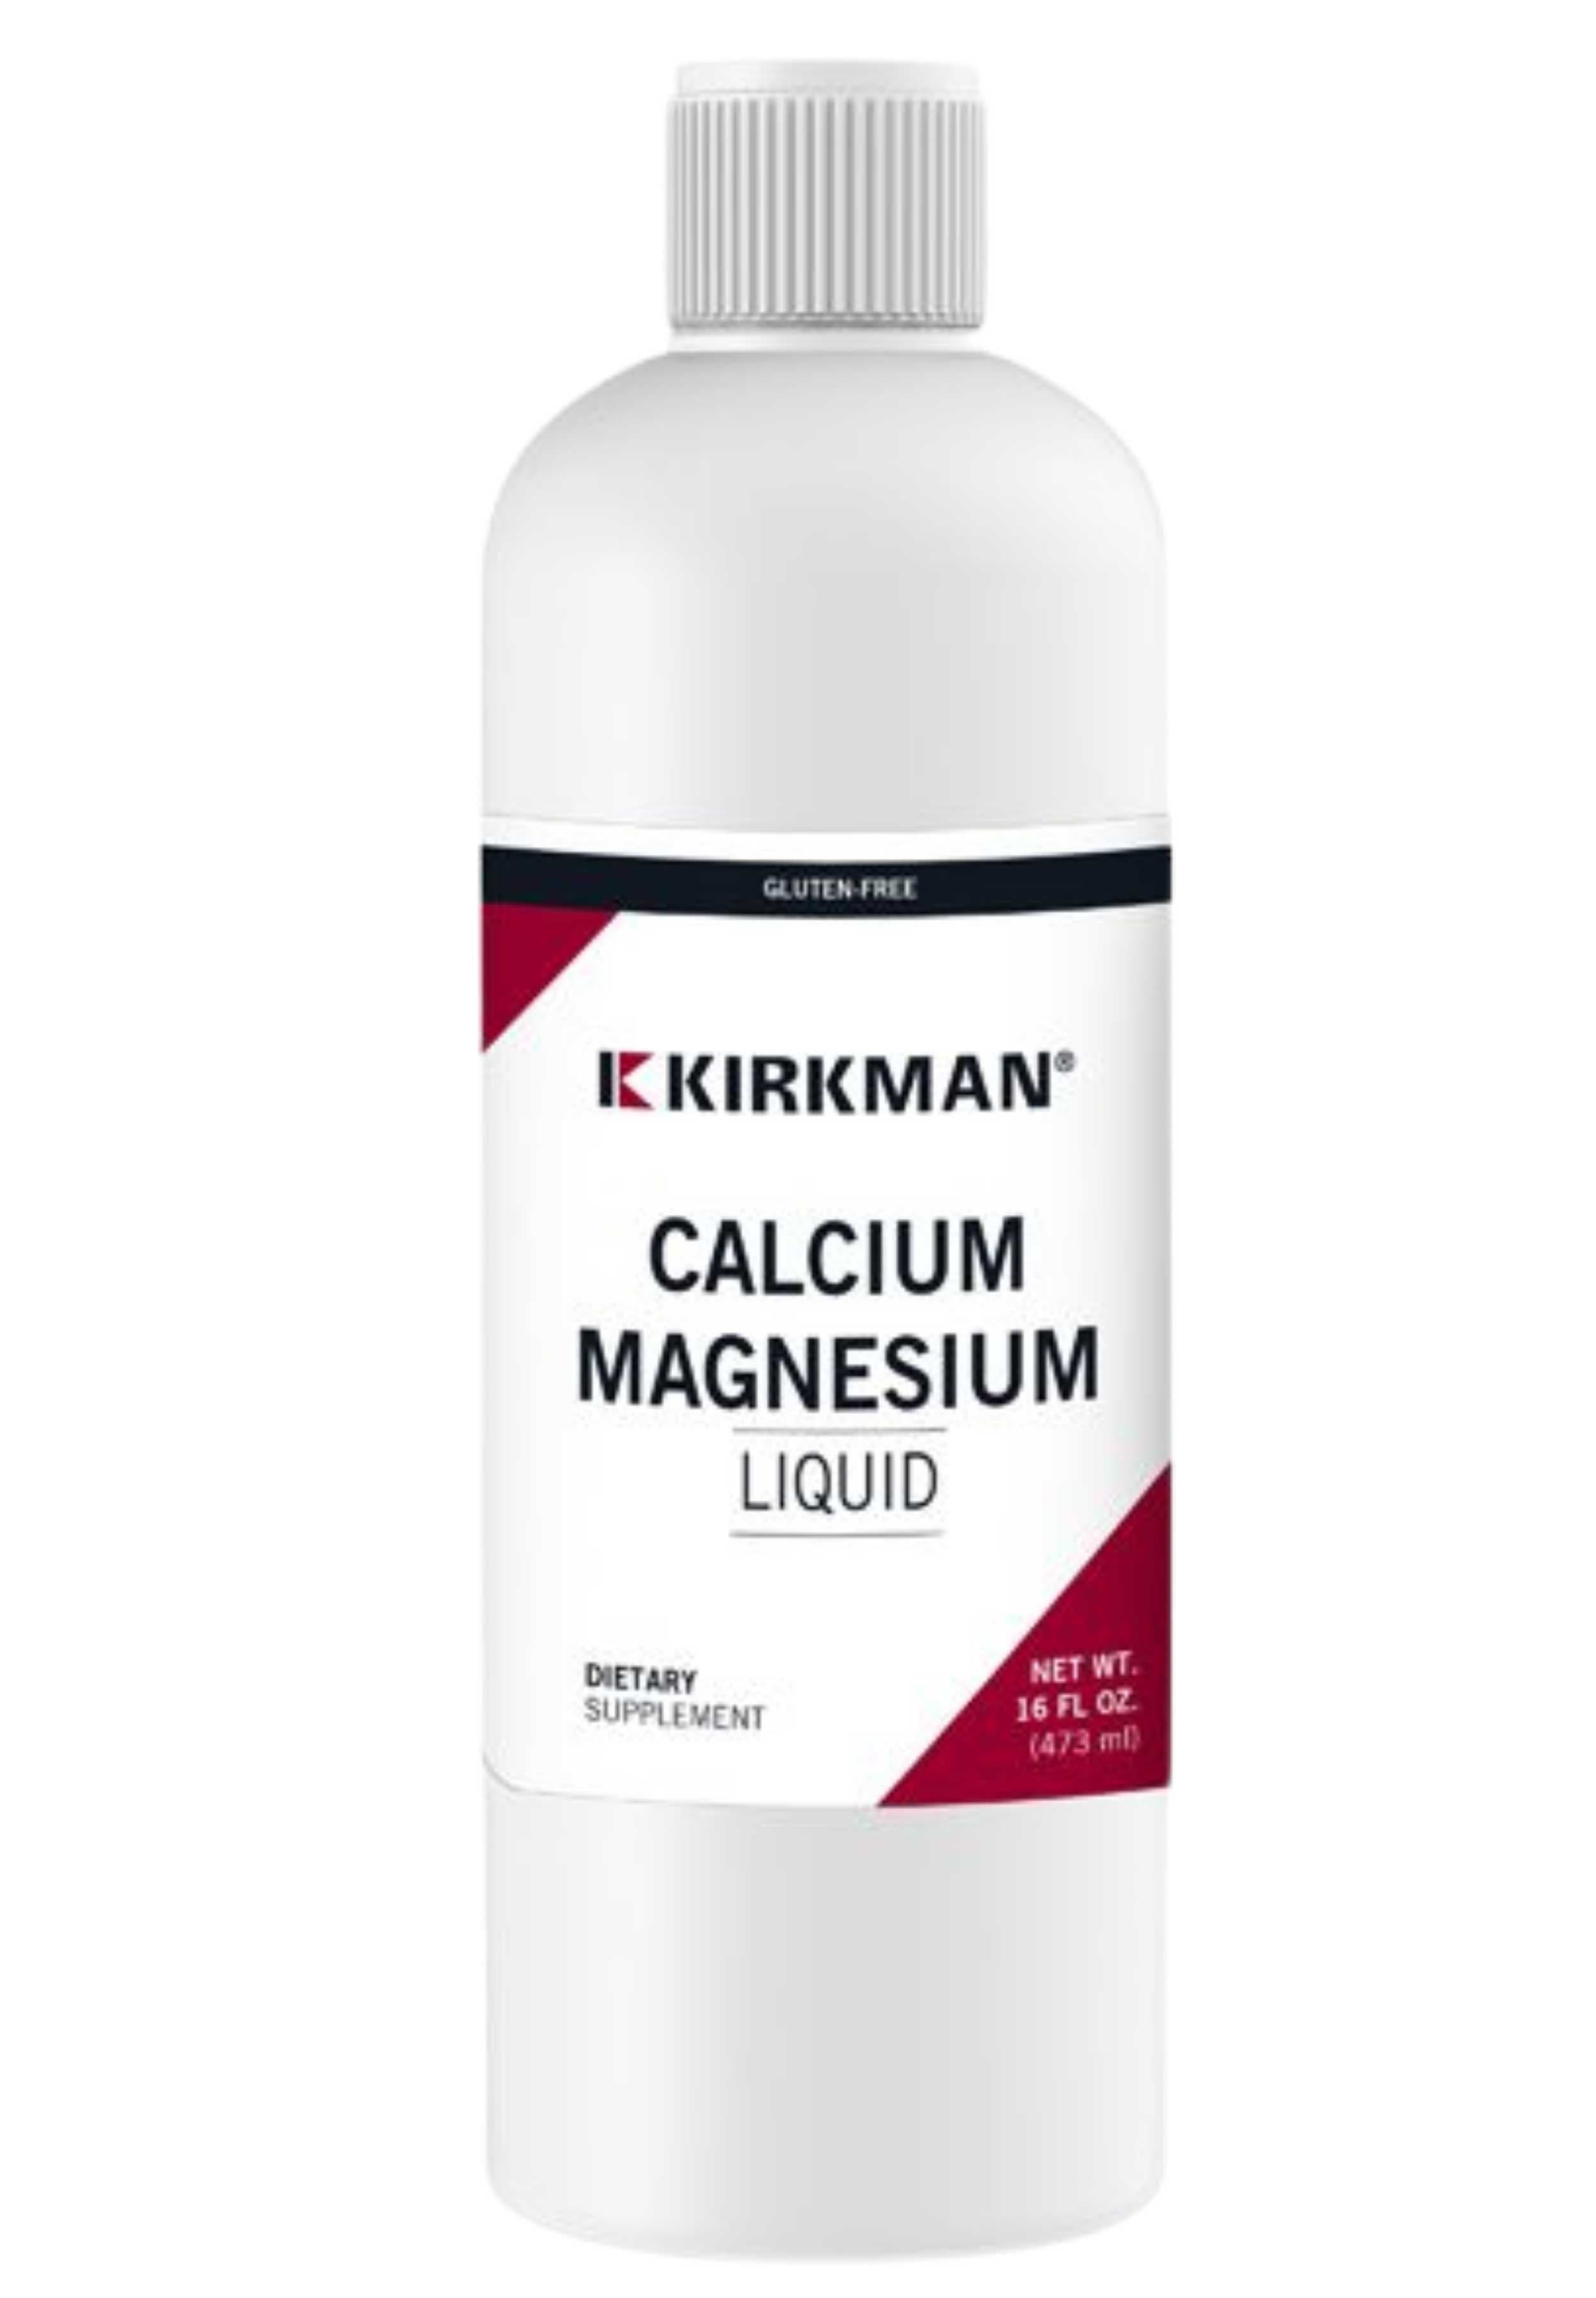 Kirkman Calcium Magnesium Liquid